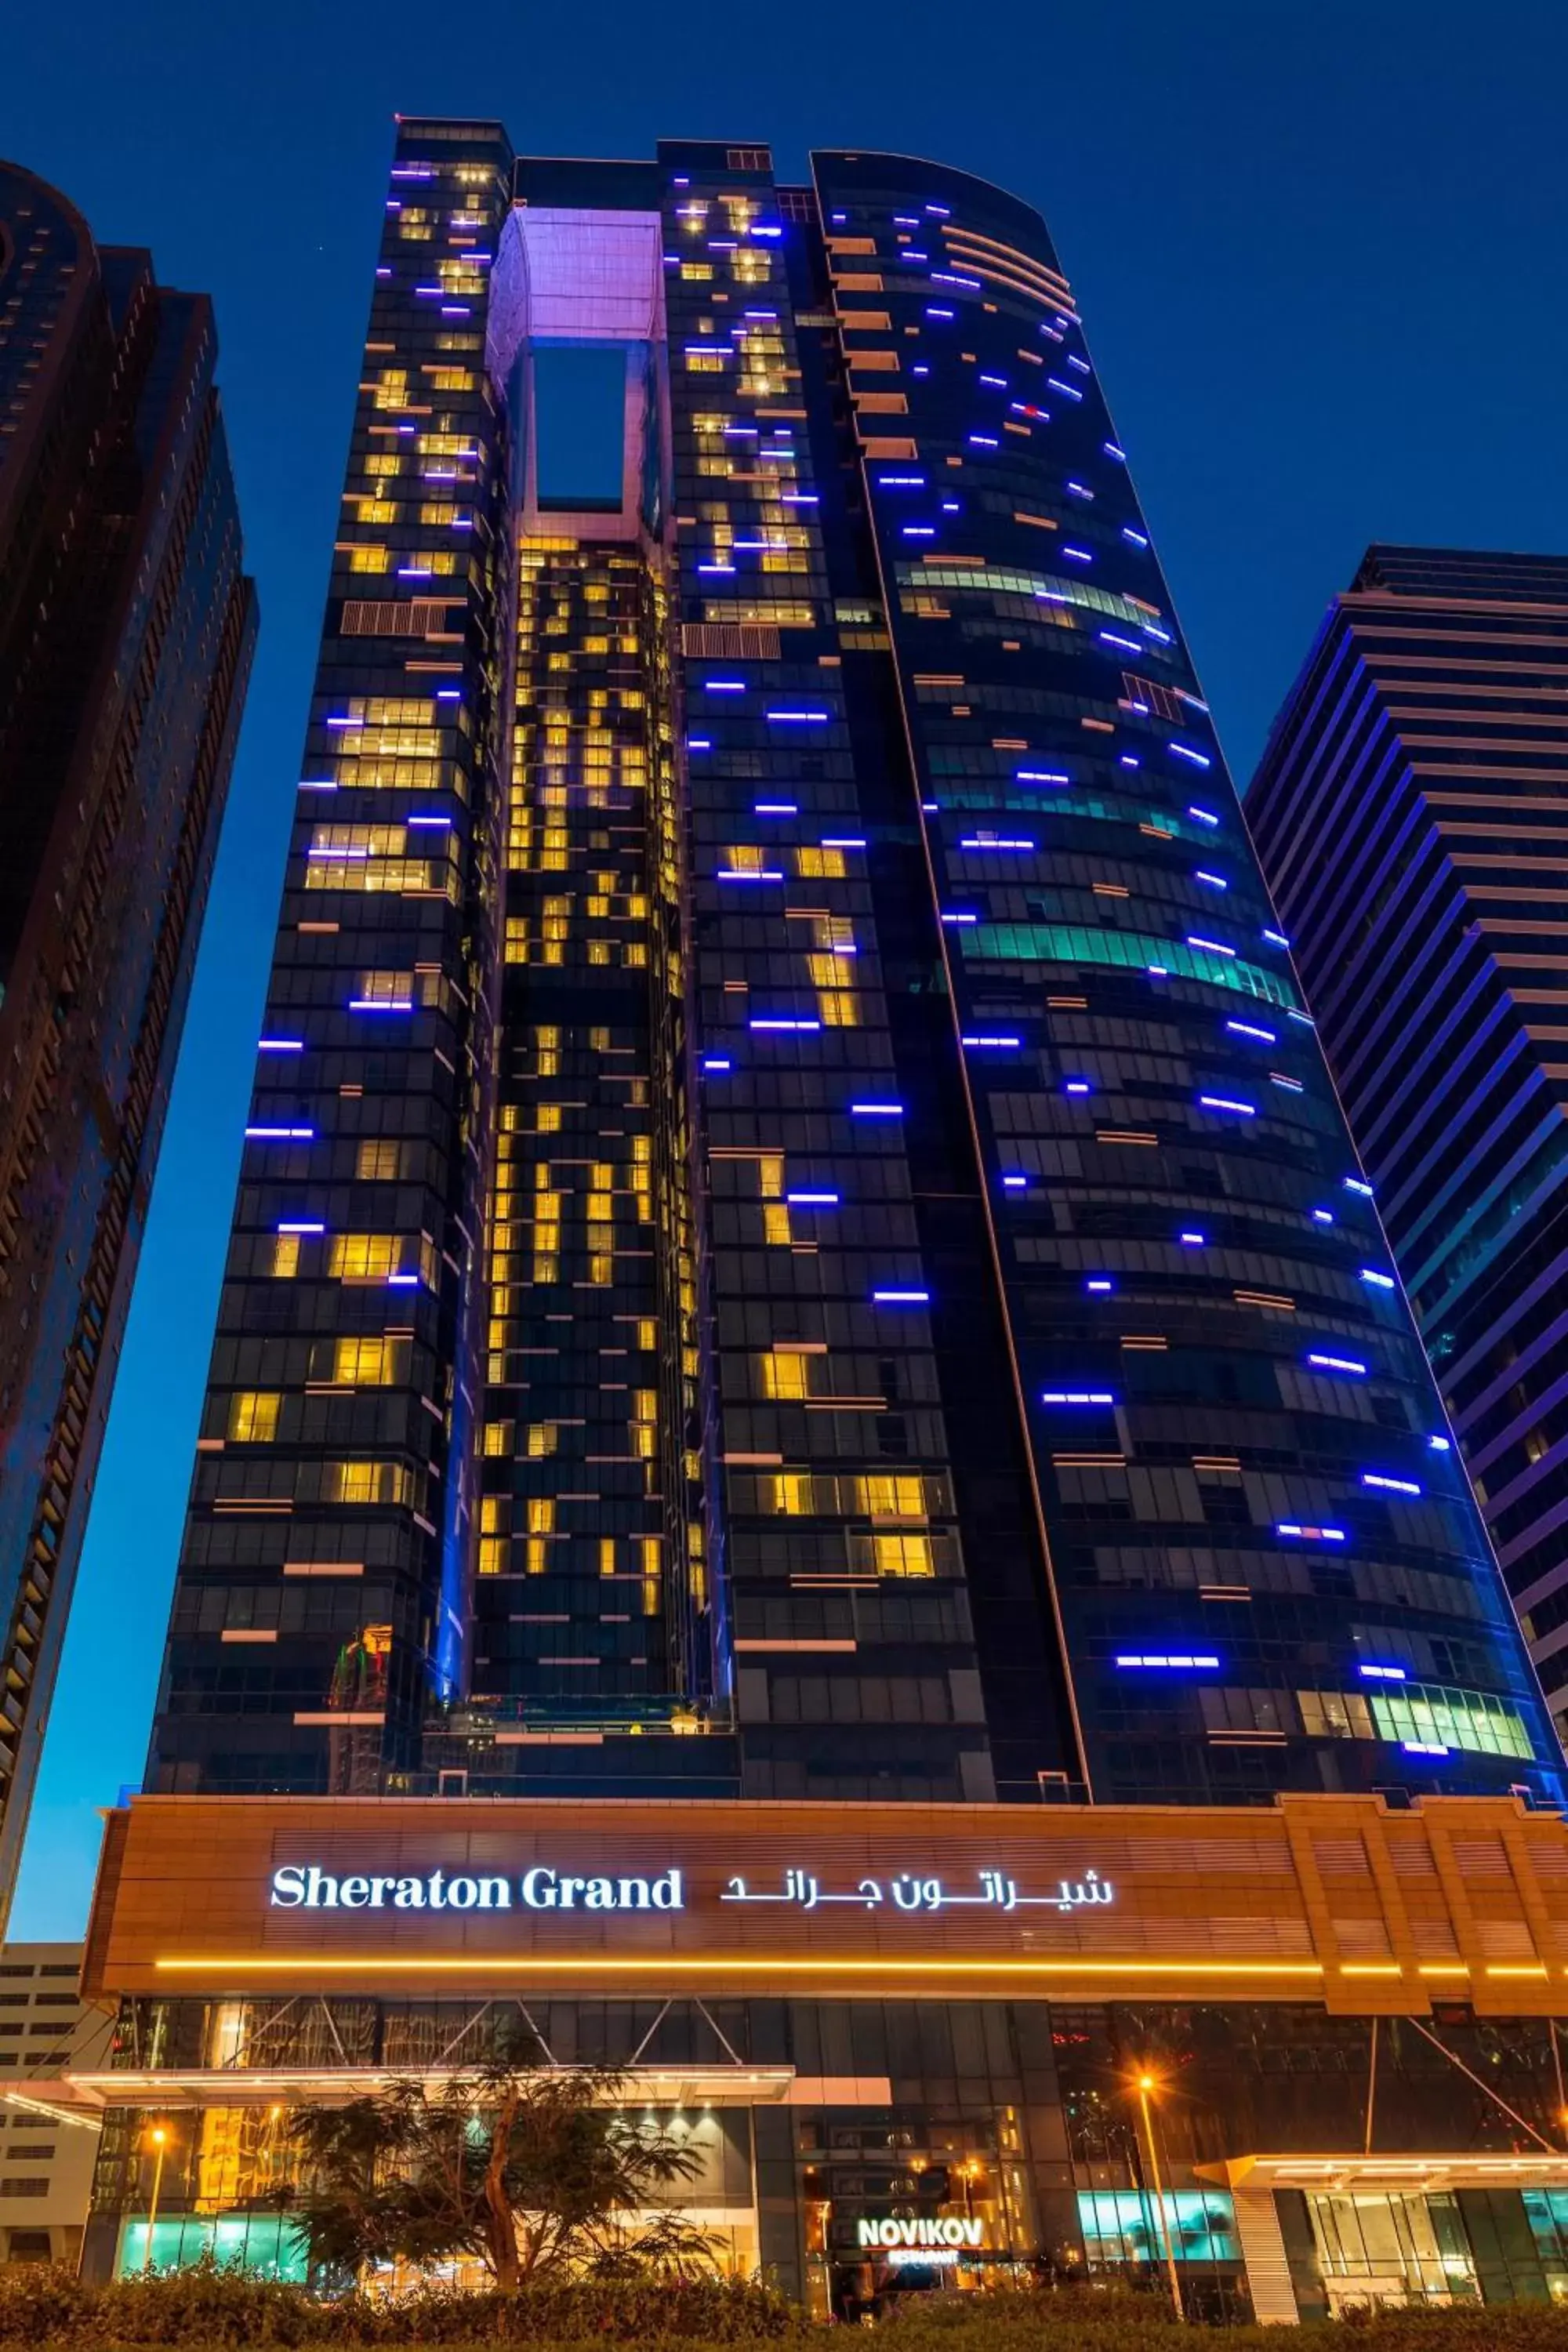 Property Building in Sheraton Grand Hotel, Dubai